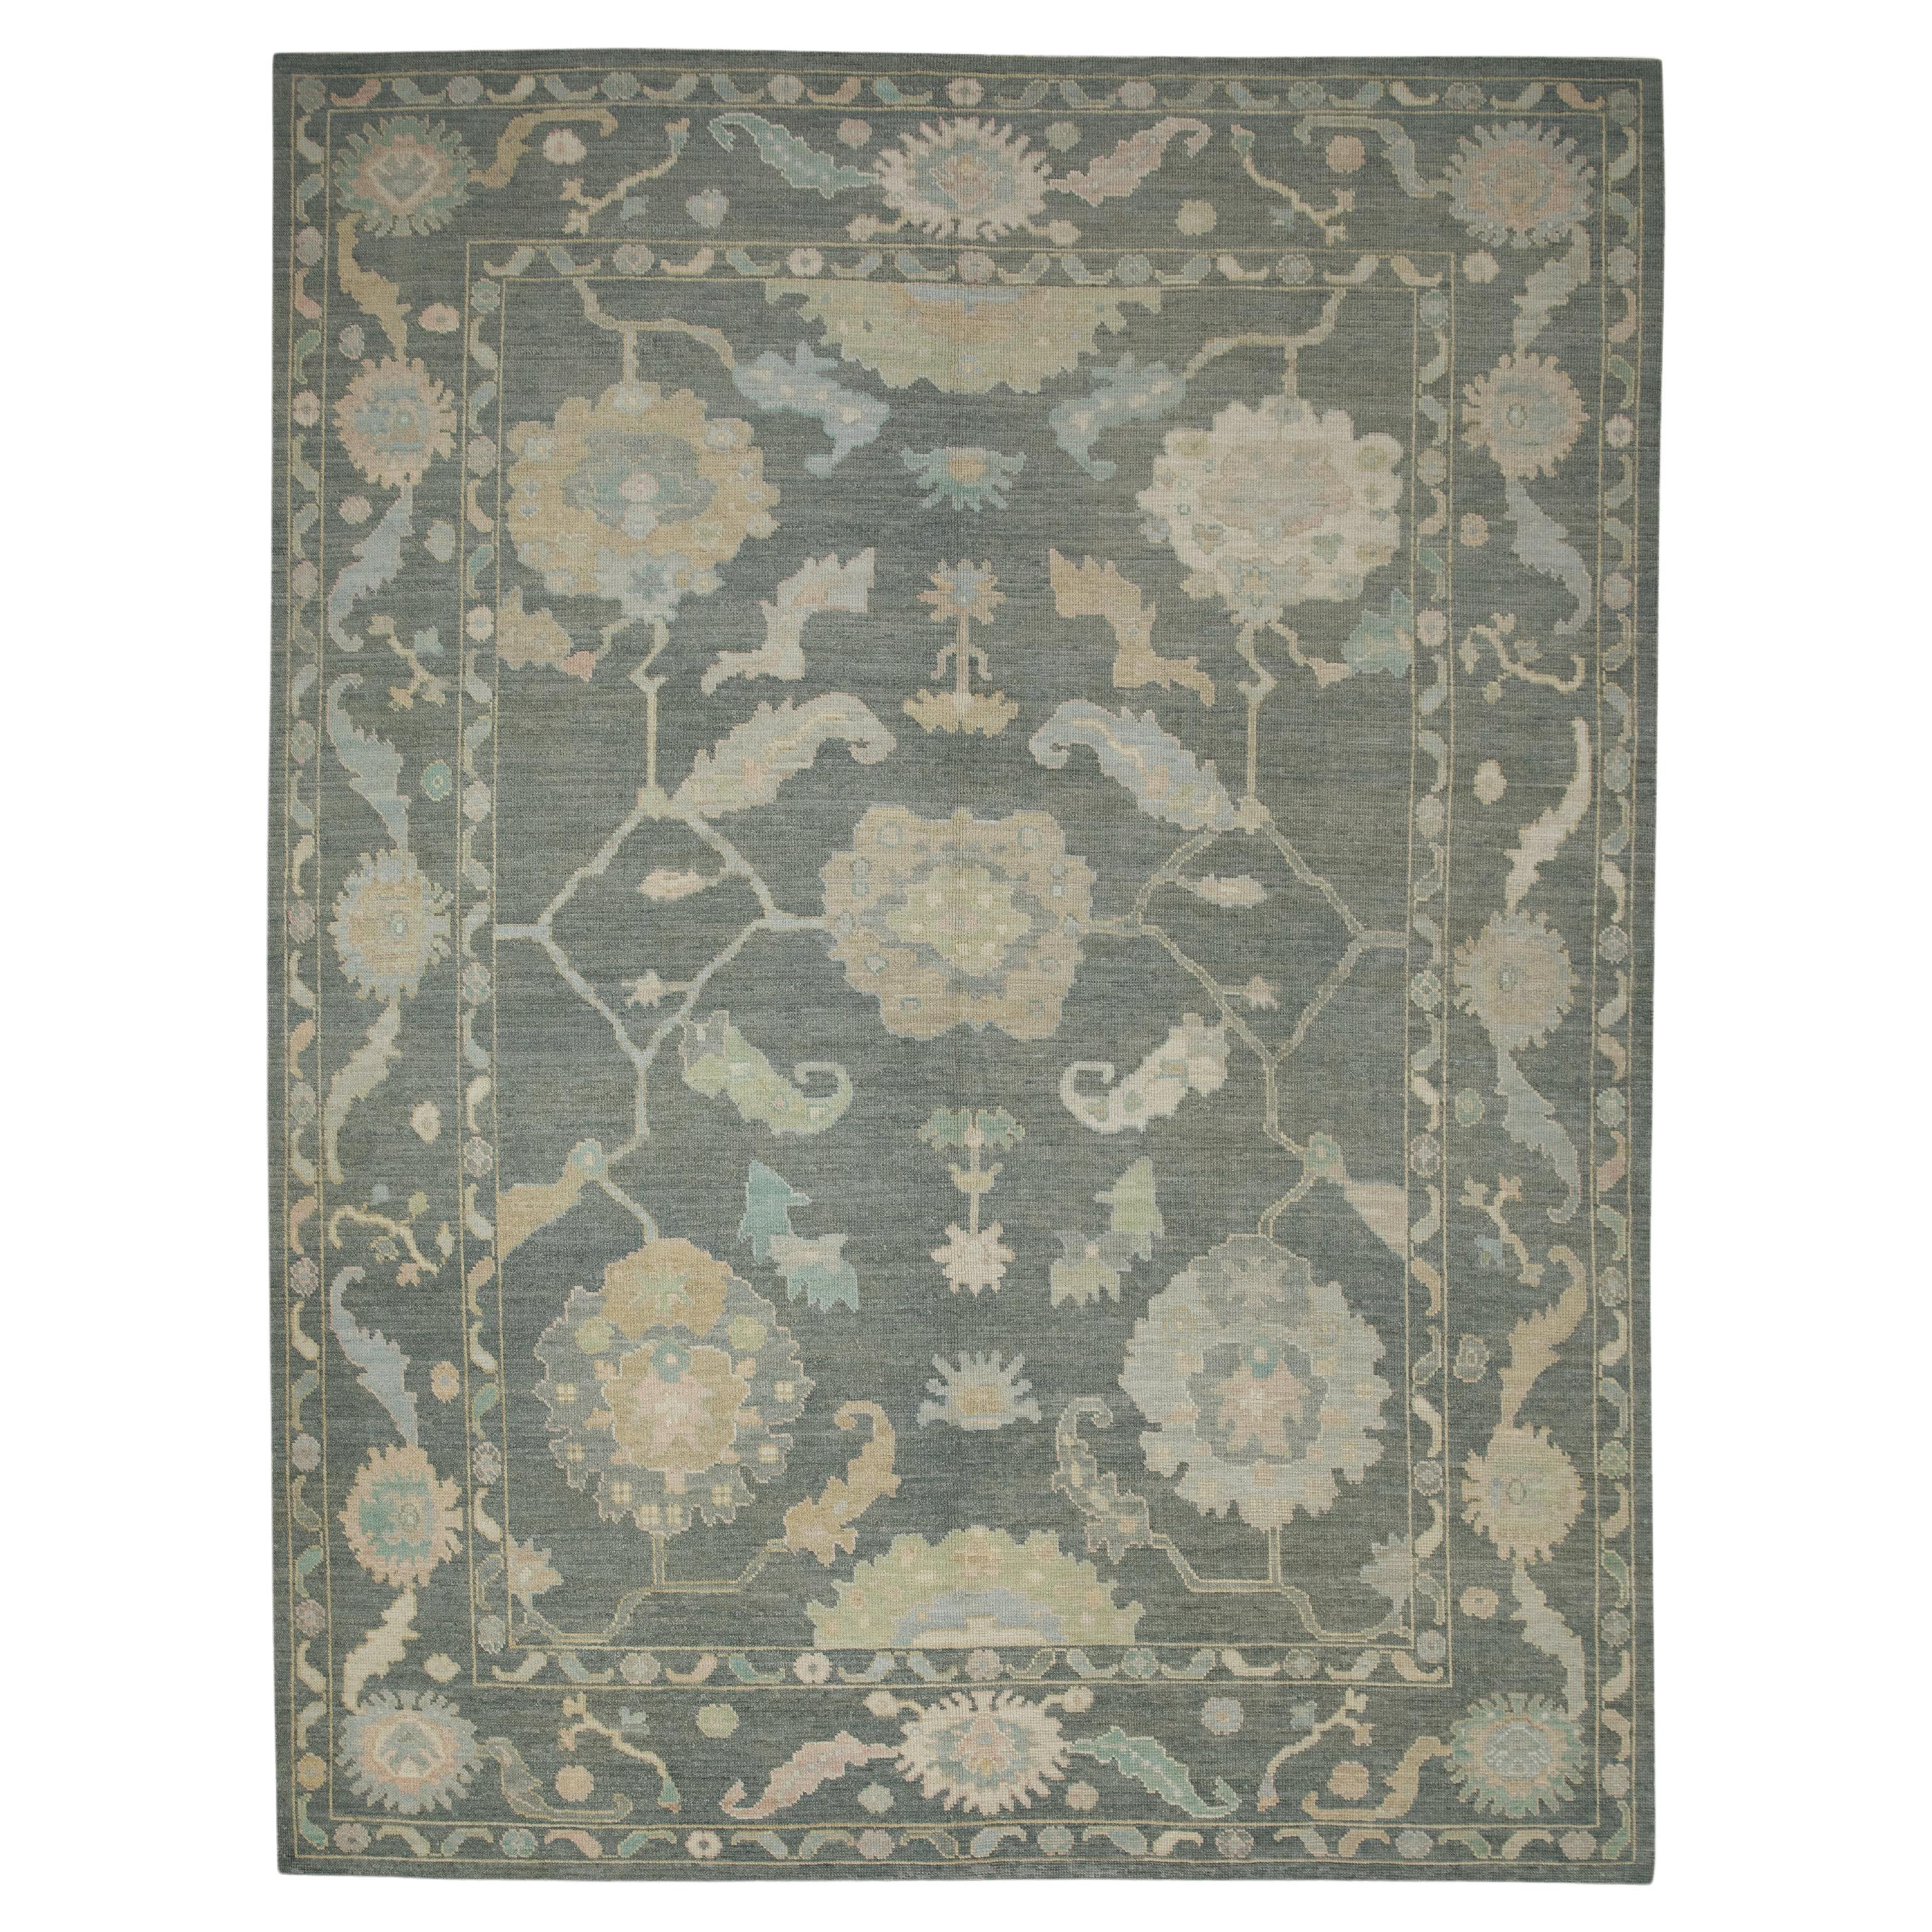 Türkischer Oushak-Teppich aus handgewebter Wolle mit grauem, geblümtem Design, 8' x 10'6"